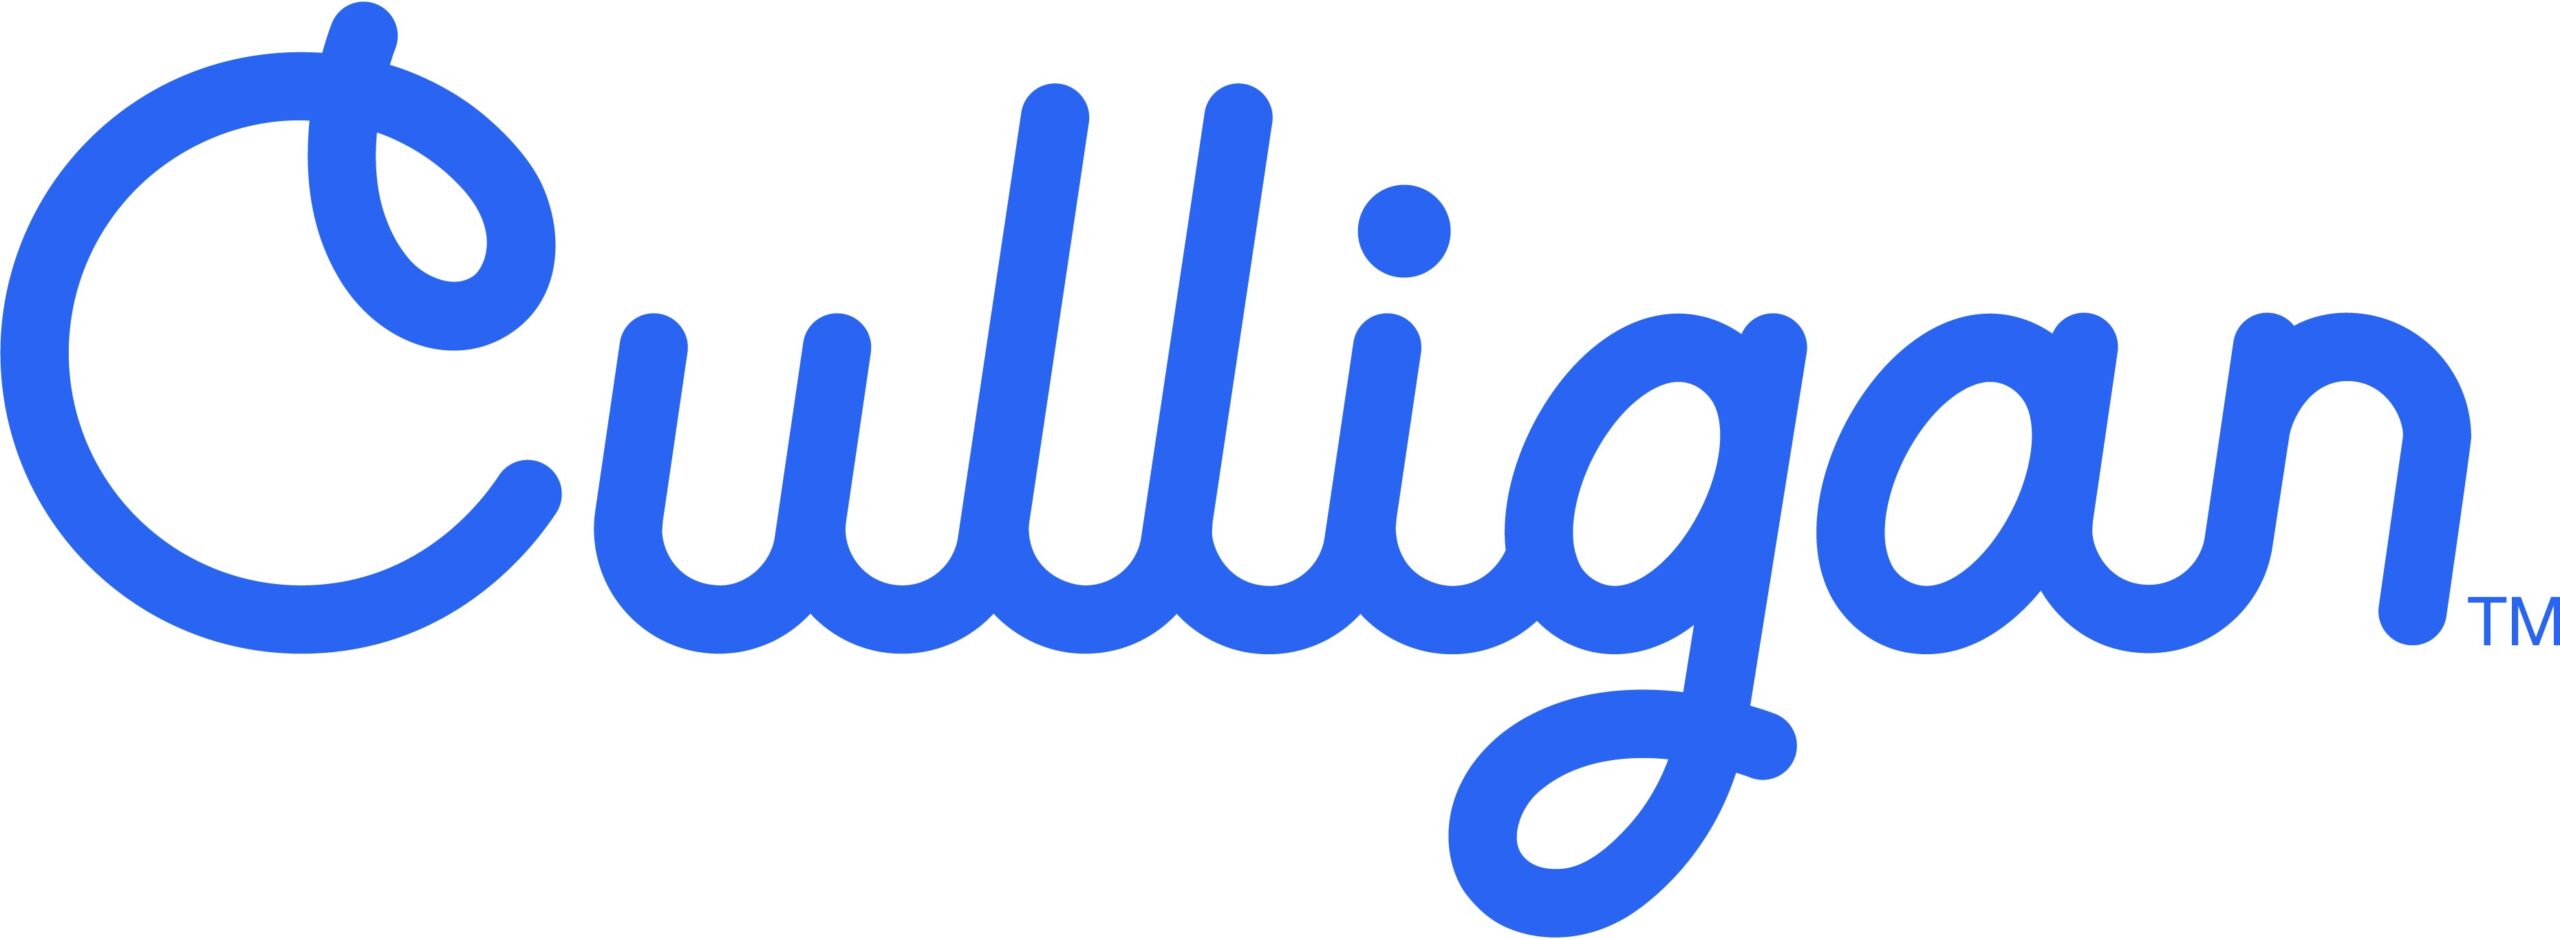 Culligan International Company